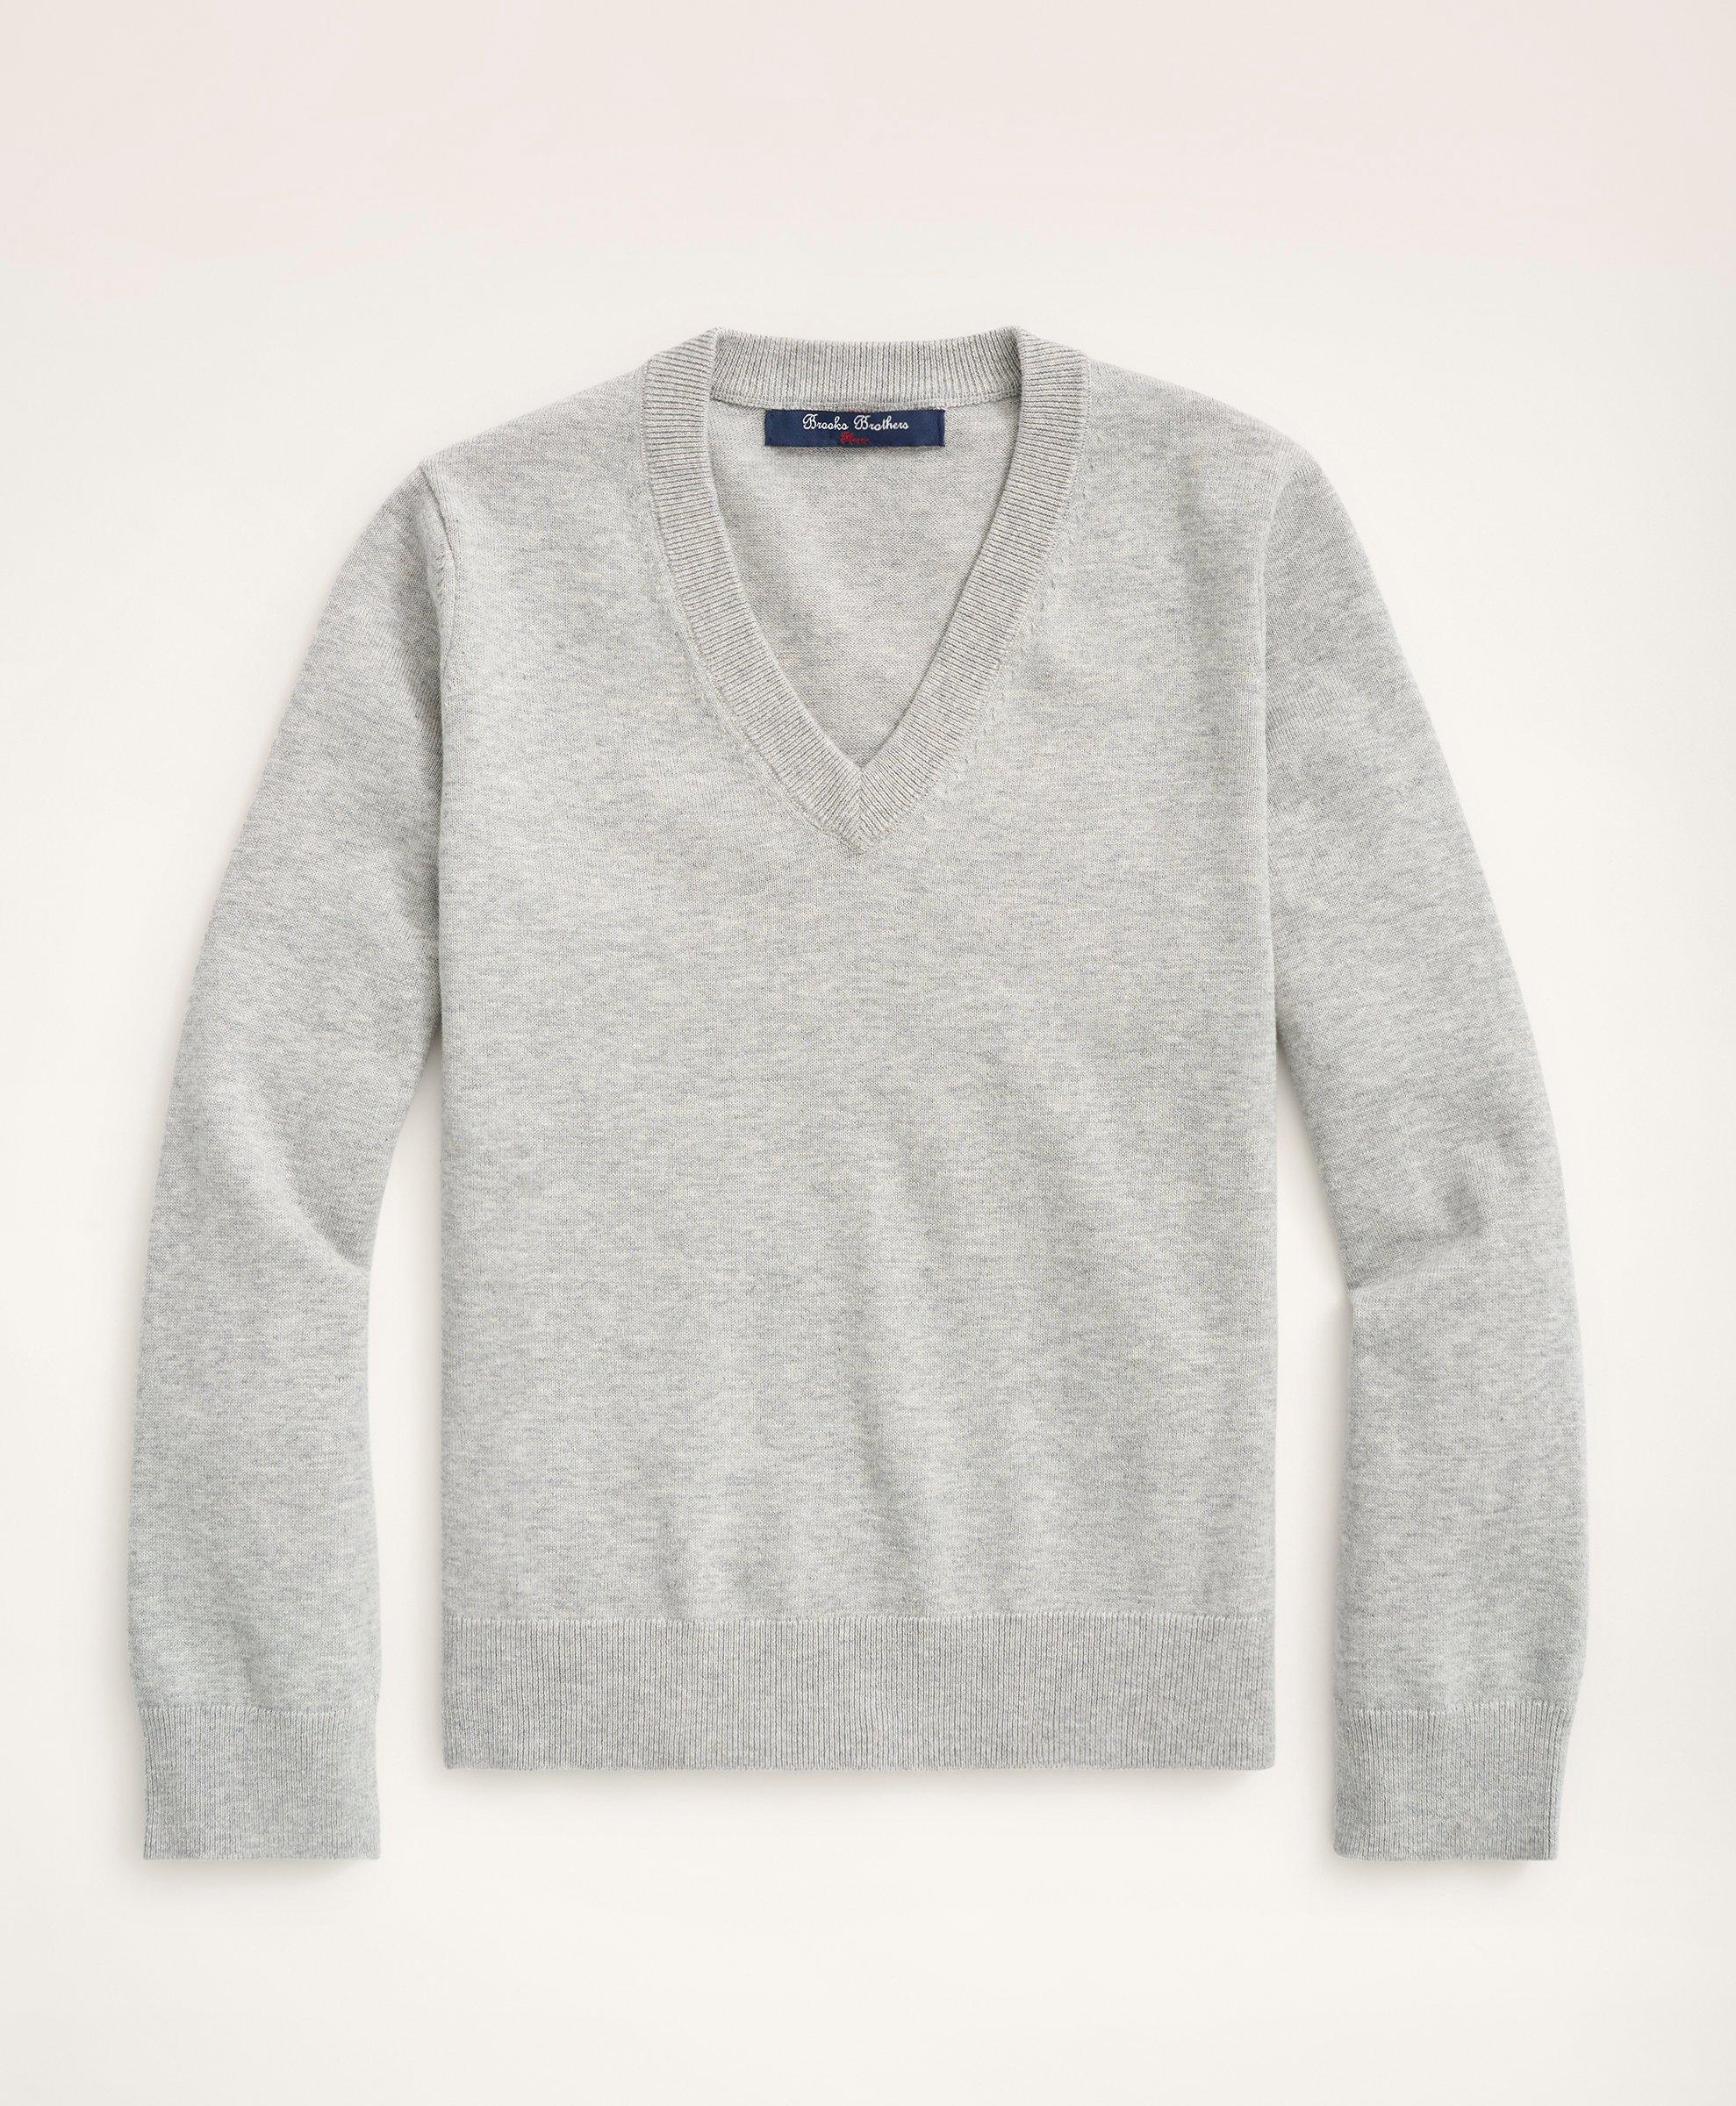 Brooks Brothers Kids'  Boys Cotton V-neck Sweater | Grey Heather | Size Xs